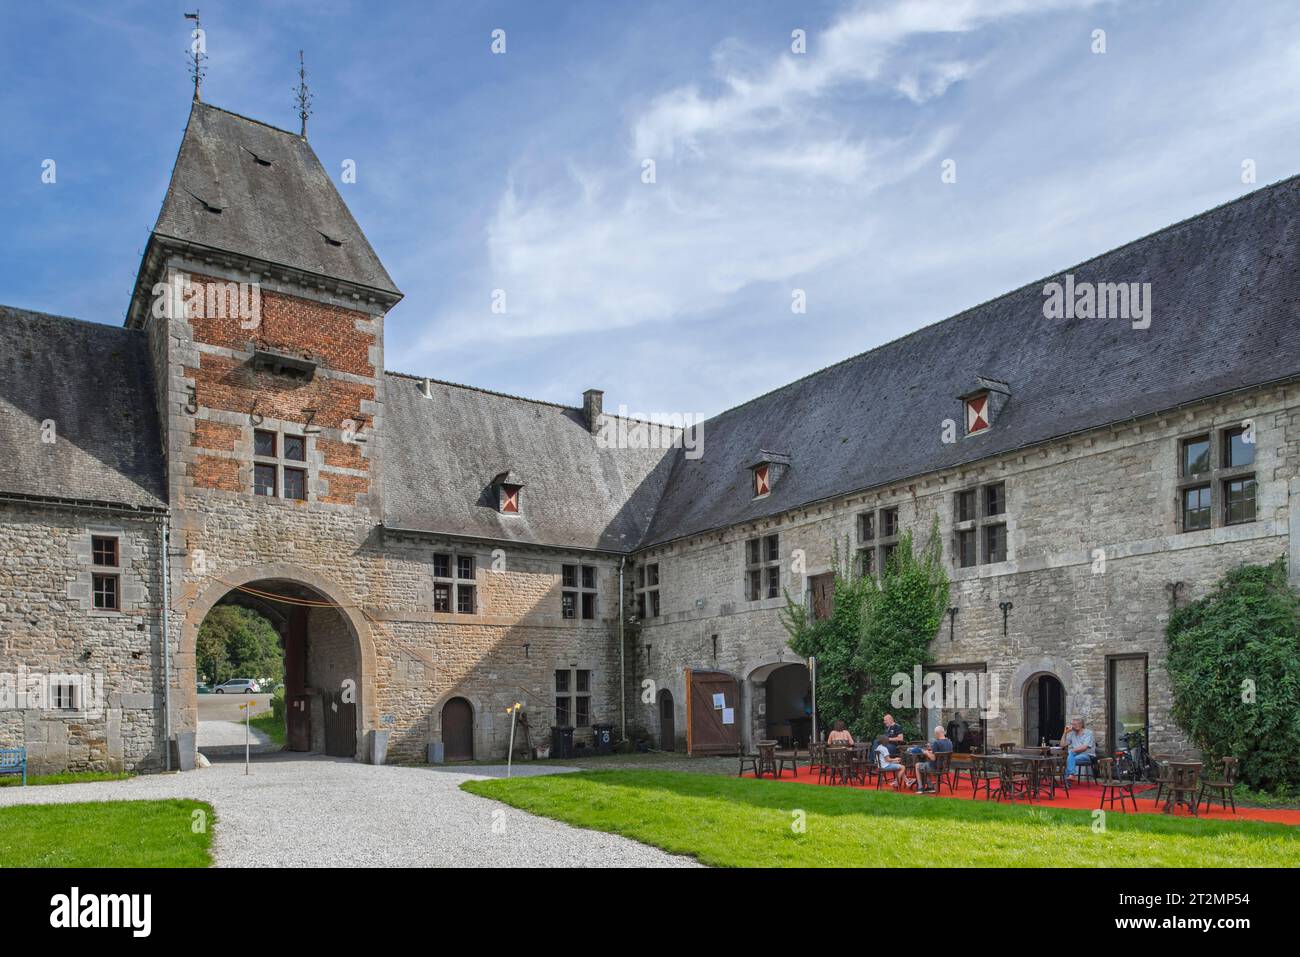 Château de Spontin, porte d'entrée d'un château médiéval à douves du 16e siècle près d'Yvoir, province de Namur, Ardennes belges, Wallonie, Belgique Banque D'Images